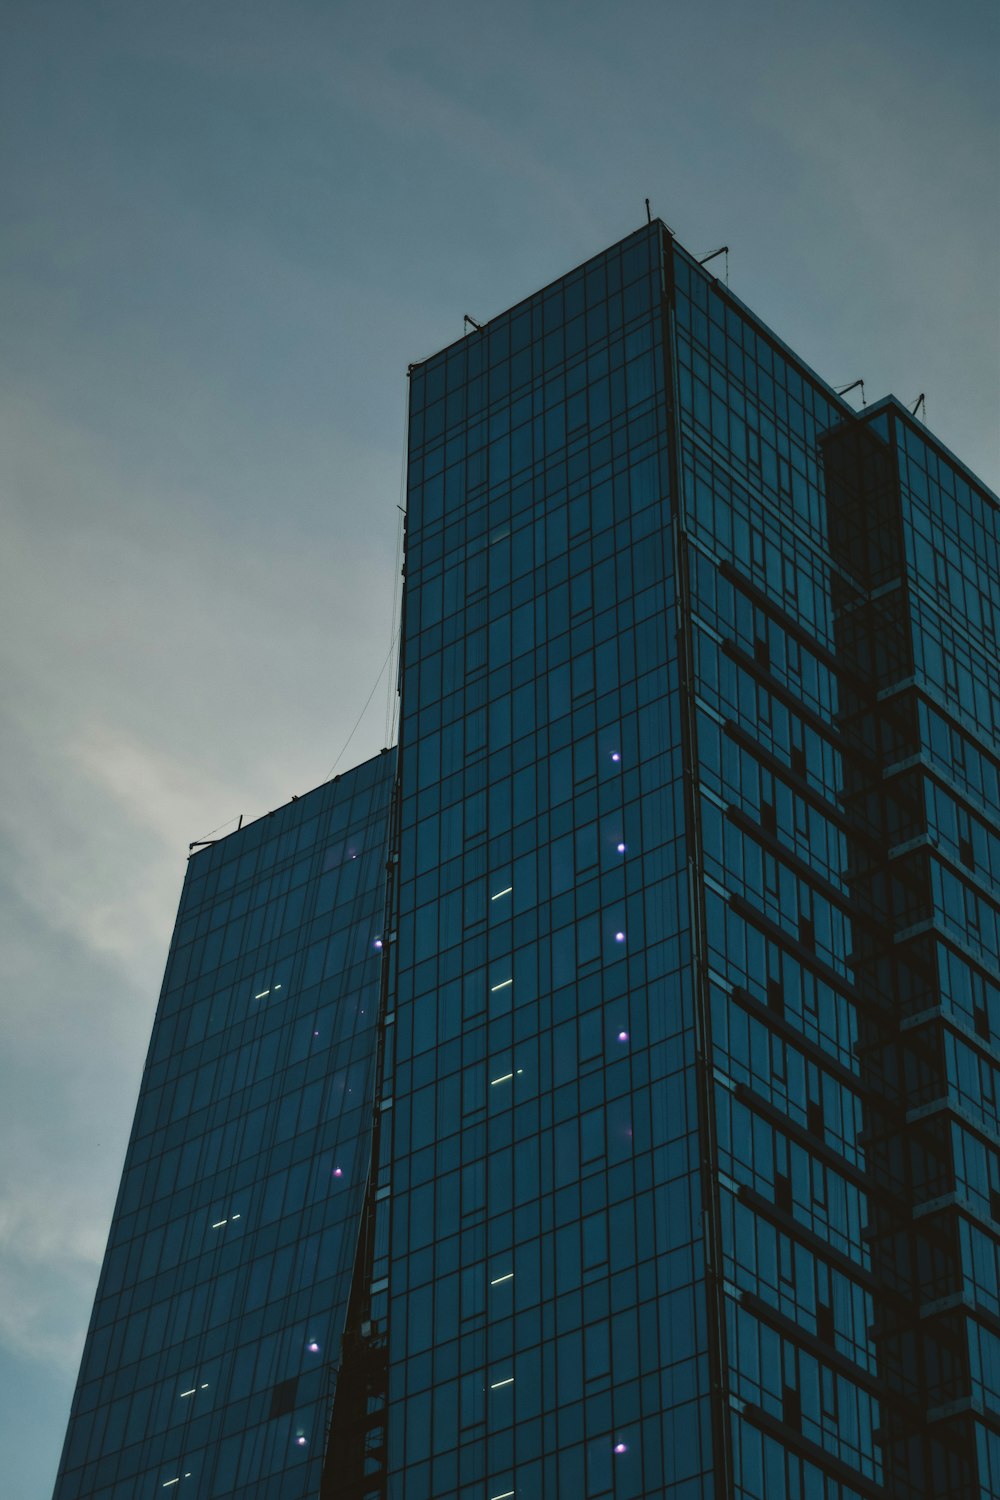 青と黒のガラス張りの高層ビル